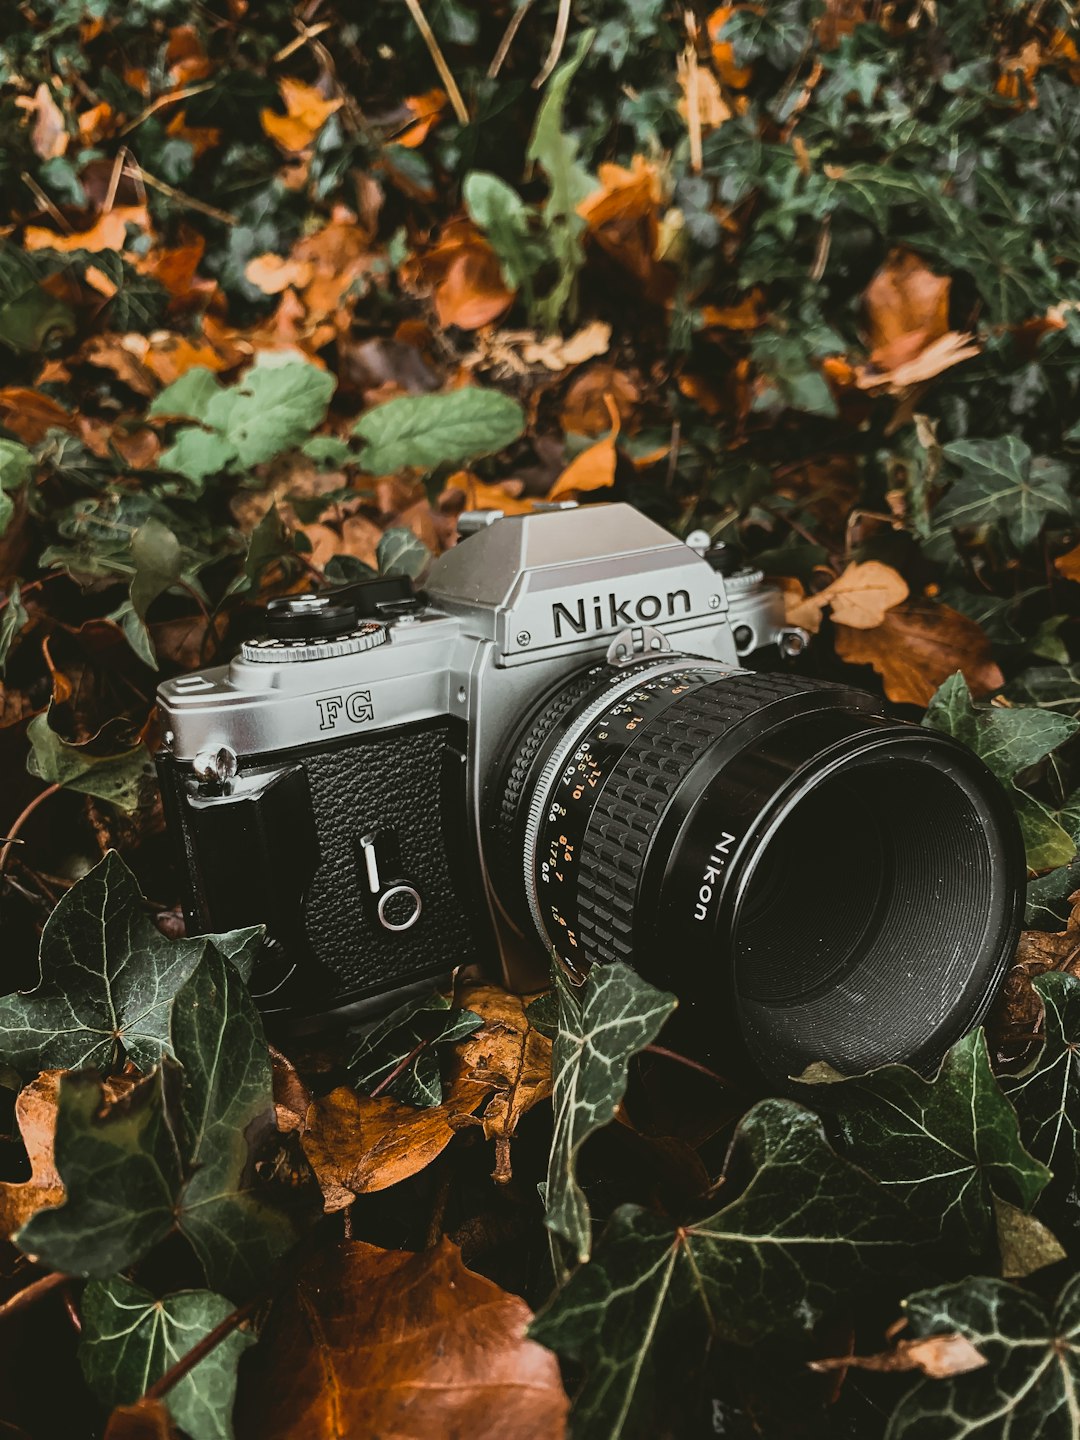 grey and black Nikon SLR camera